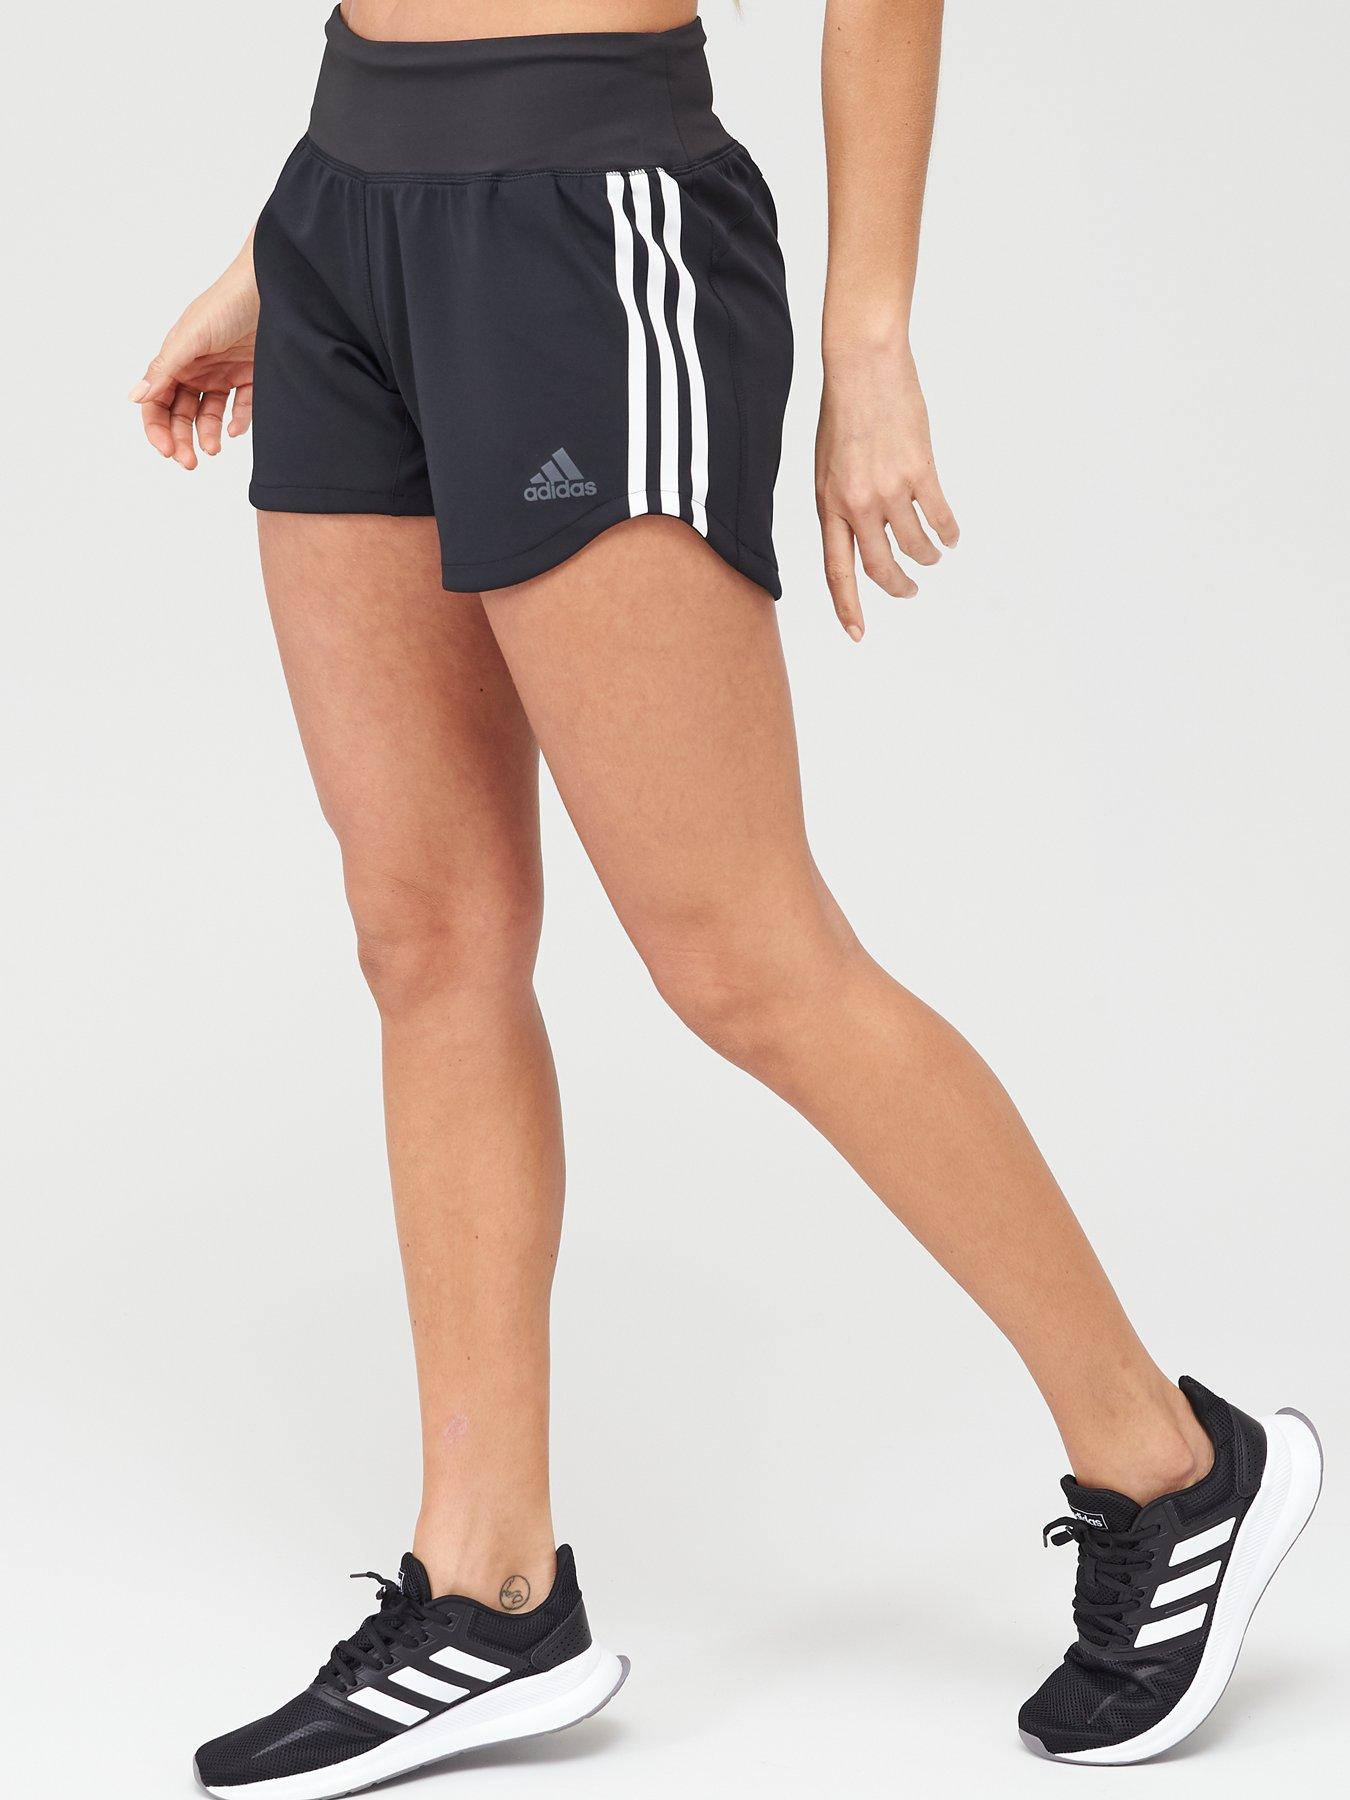 adidas gym shorts